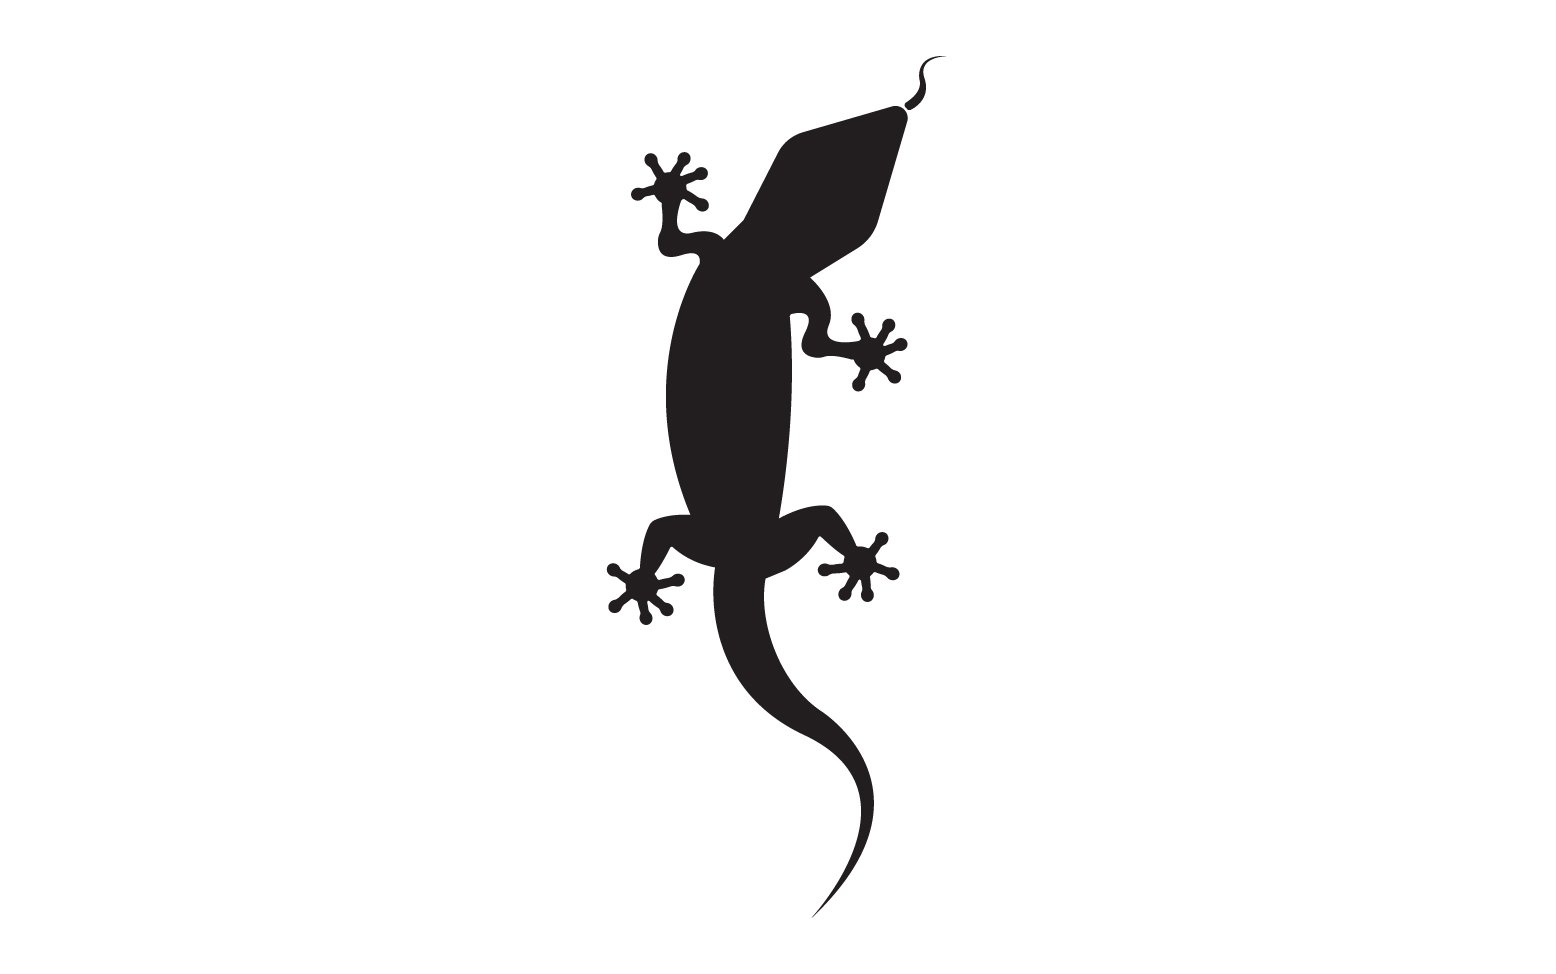 Lizard chameleon home lizard logo v55